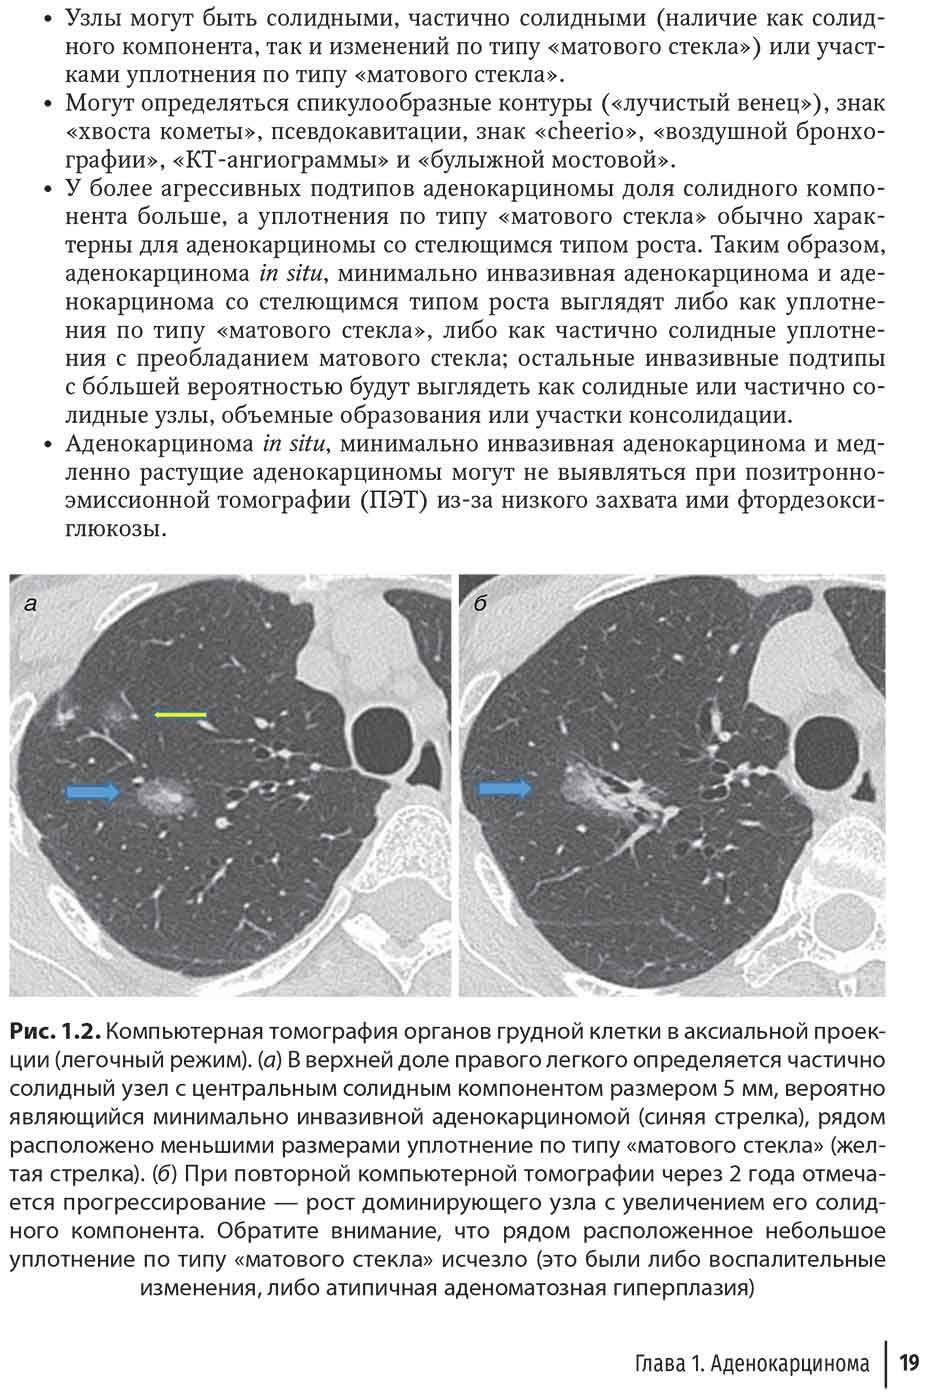 Рис. 1.2. Компьютерная томография органов грудной клетки